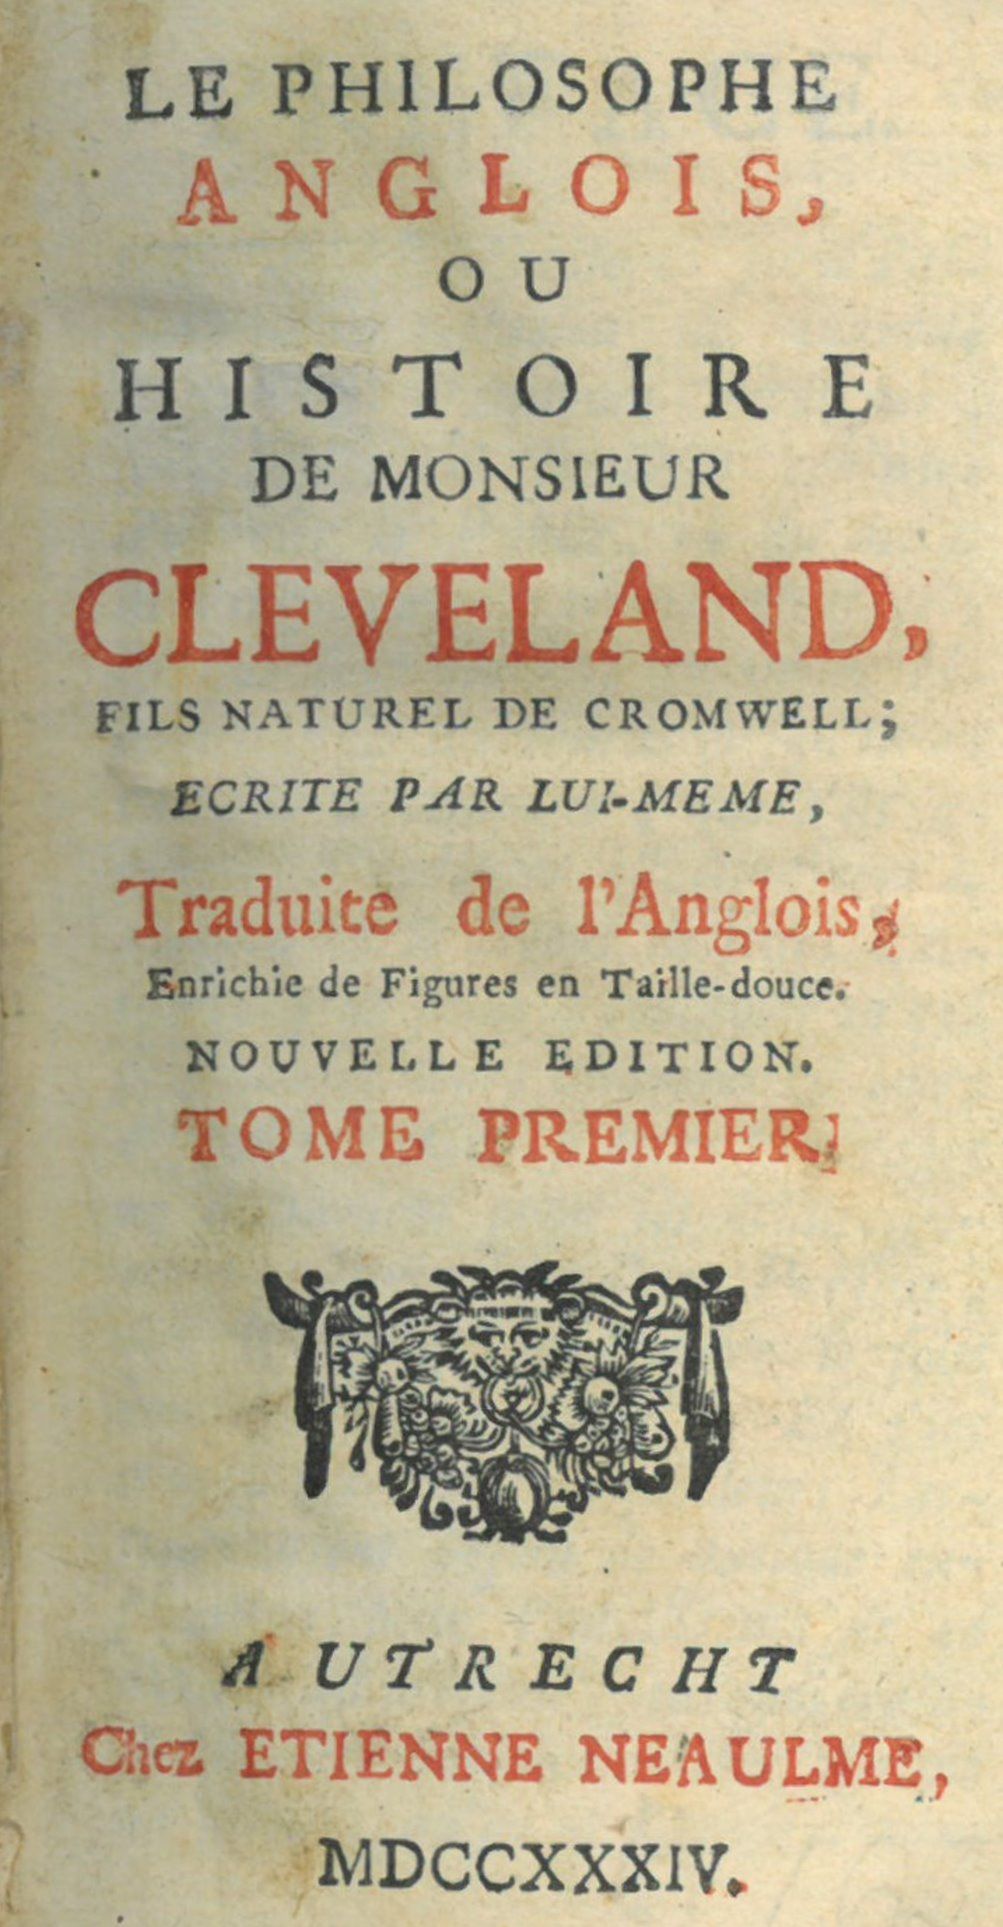 Le Philosophe Anglois, ou Histoire de Monsieur Cleveland, fils naturel de Cromwell; ecrite par lui-meme, traduite de l´Anglois, enrichie de figures en taille-douce.